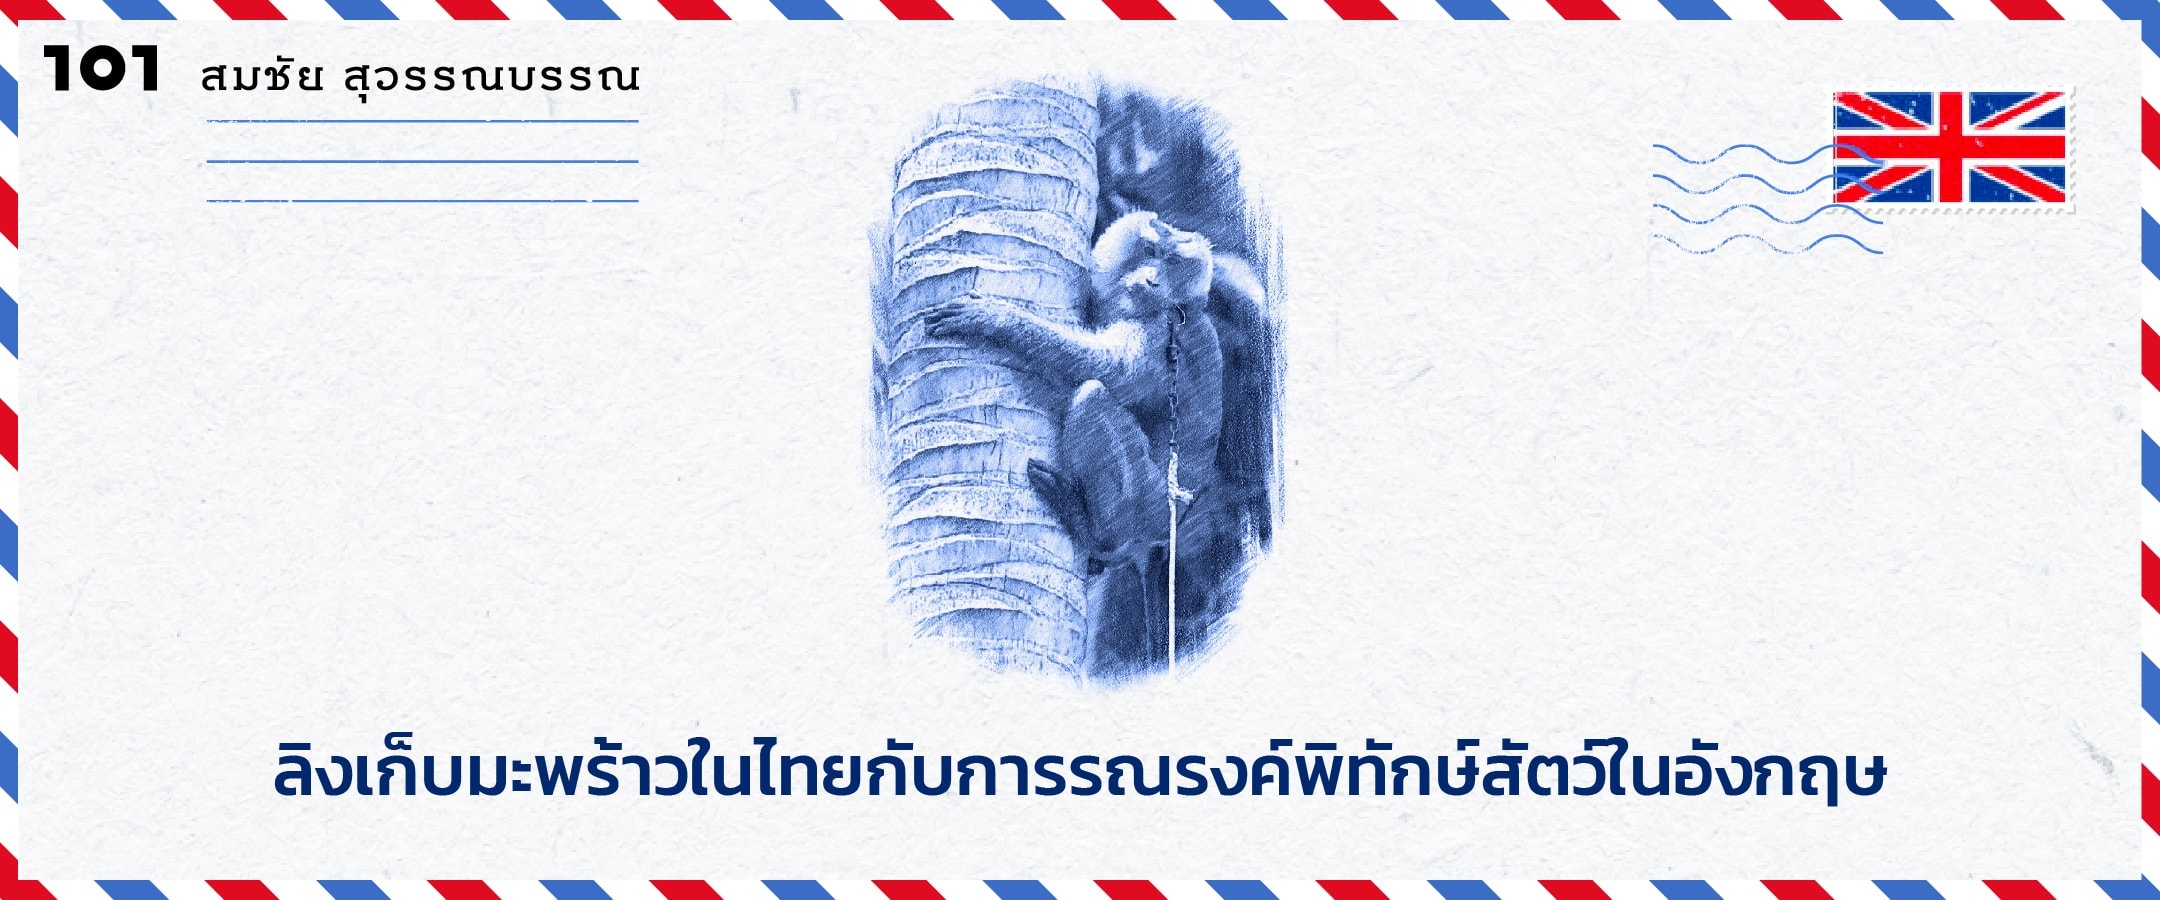 ลิงเก็บมะพร้าวในไทยกับการรณรงค์พิทักษ์สัตว์ในอังกฤษ